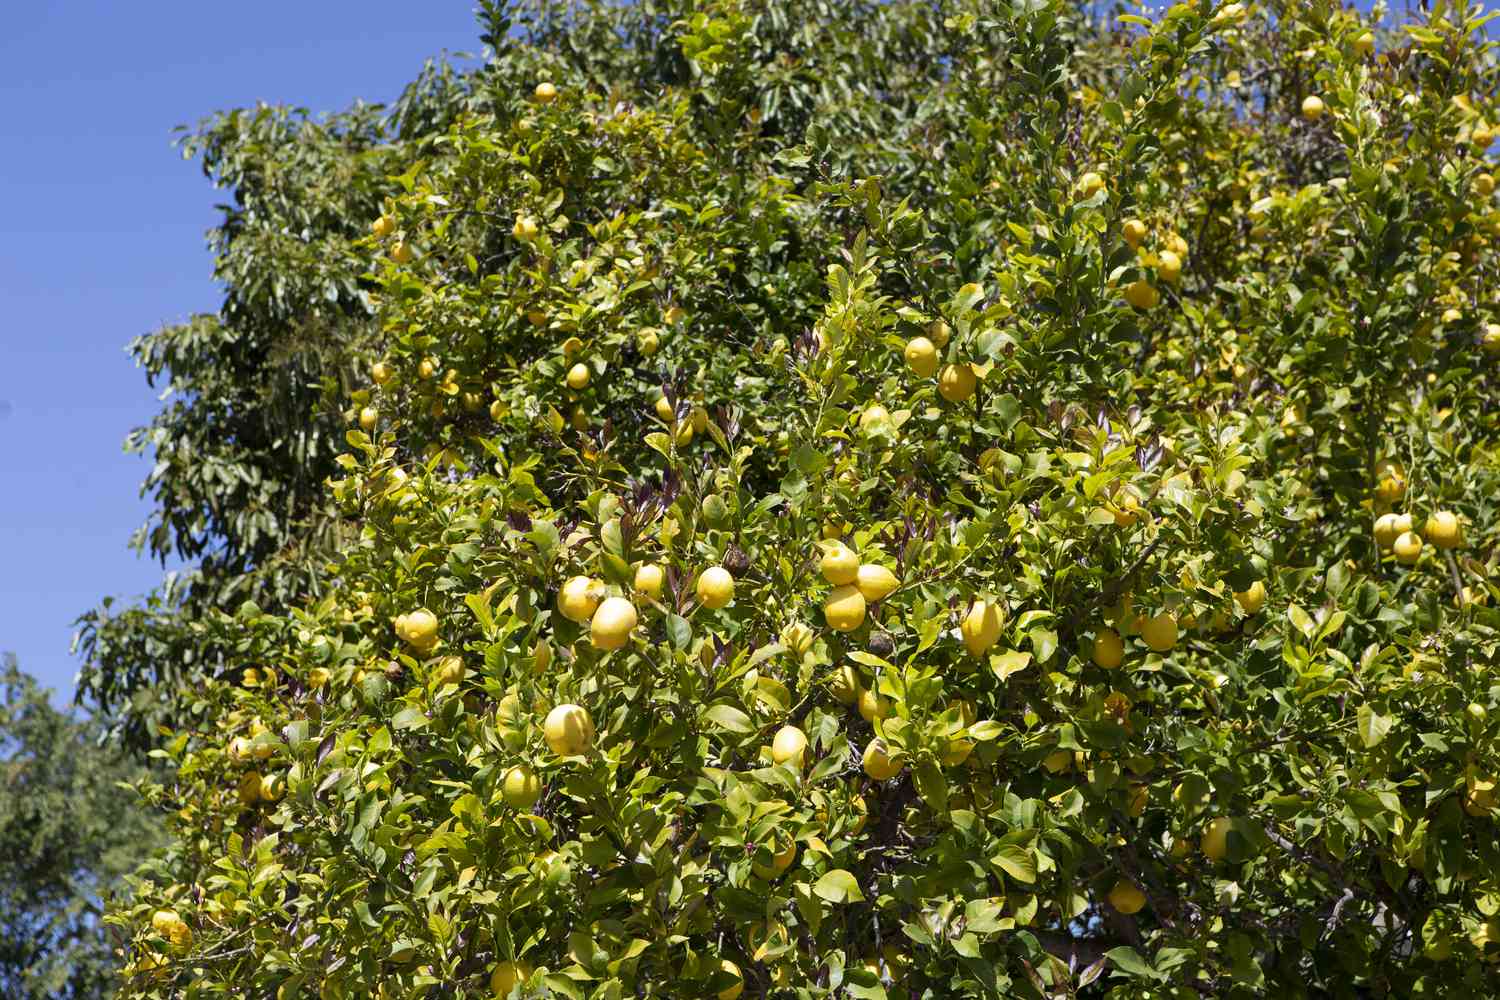 Lissaboner Zitronenbaum mit gelben Zitronen, die von den Zweigen im Sonnenlicht hängen